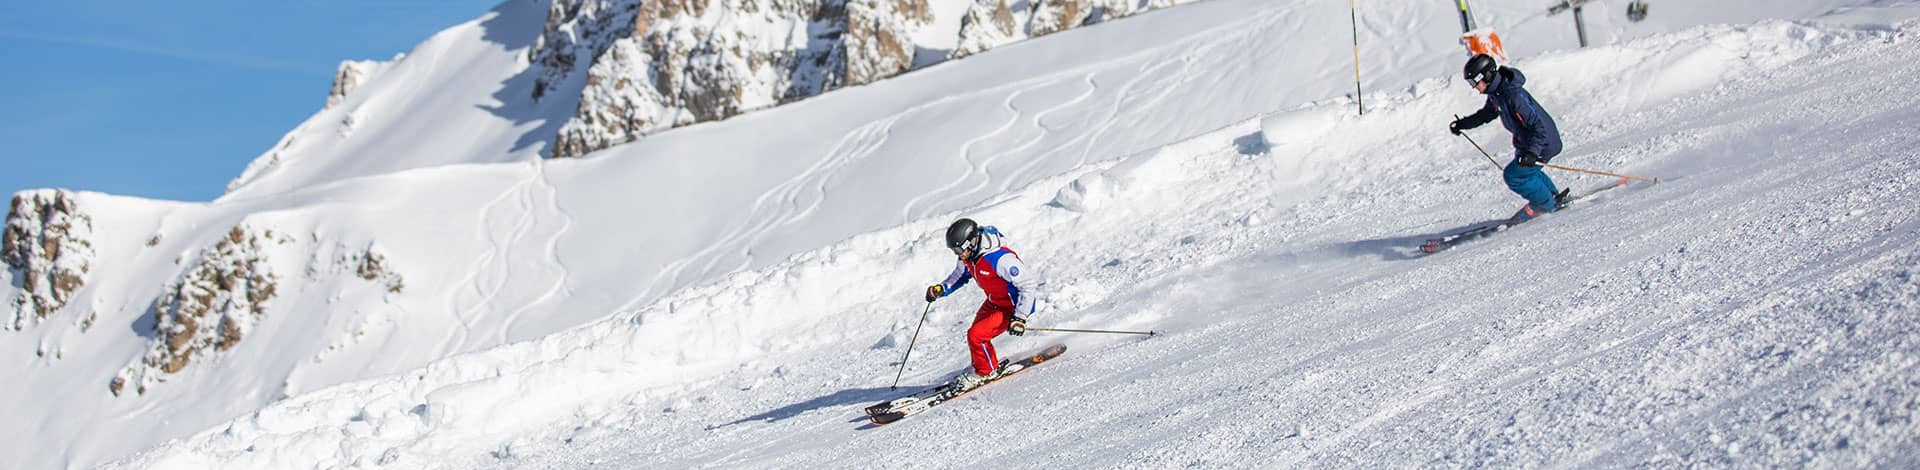 The 3 Valleys' Ski Schools your best allies